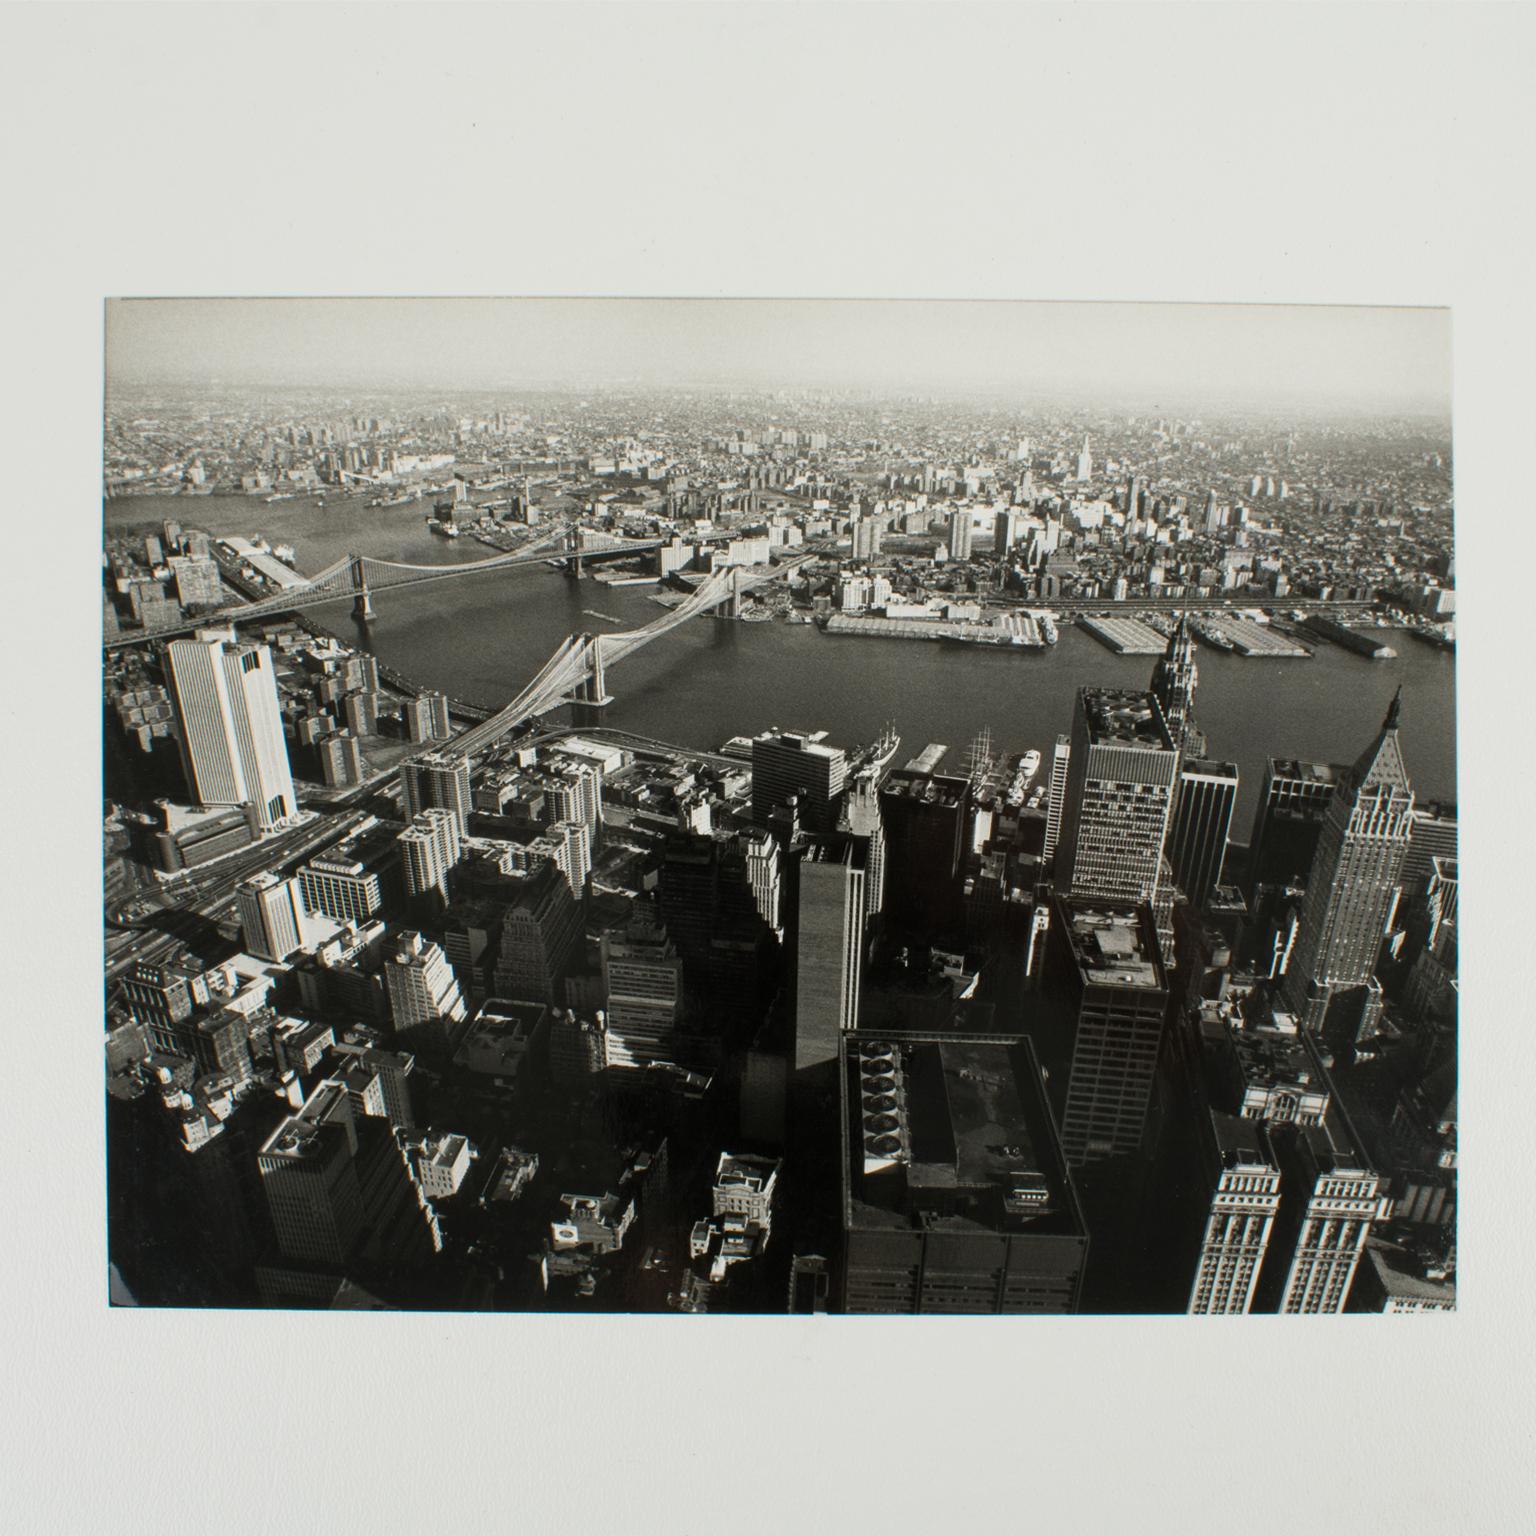 New York und der East River, Silber-Gelatine-Schwarz-Weiß-Fotografie von 1975 (Moderne), Photograph, von Poly-Press (Press Agency)